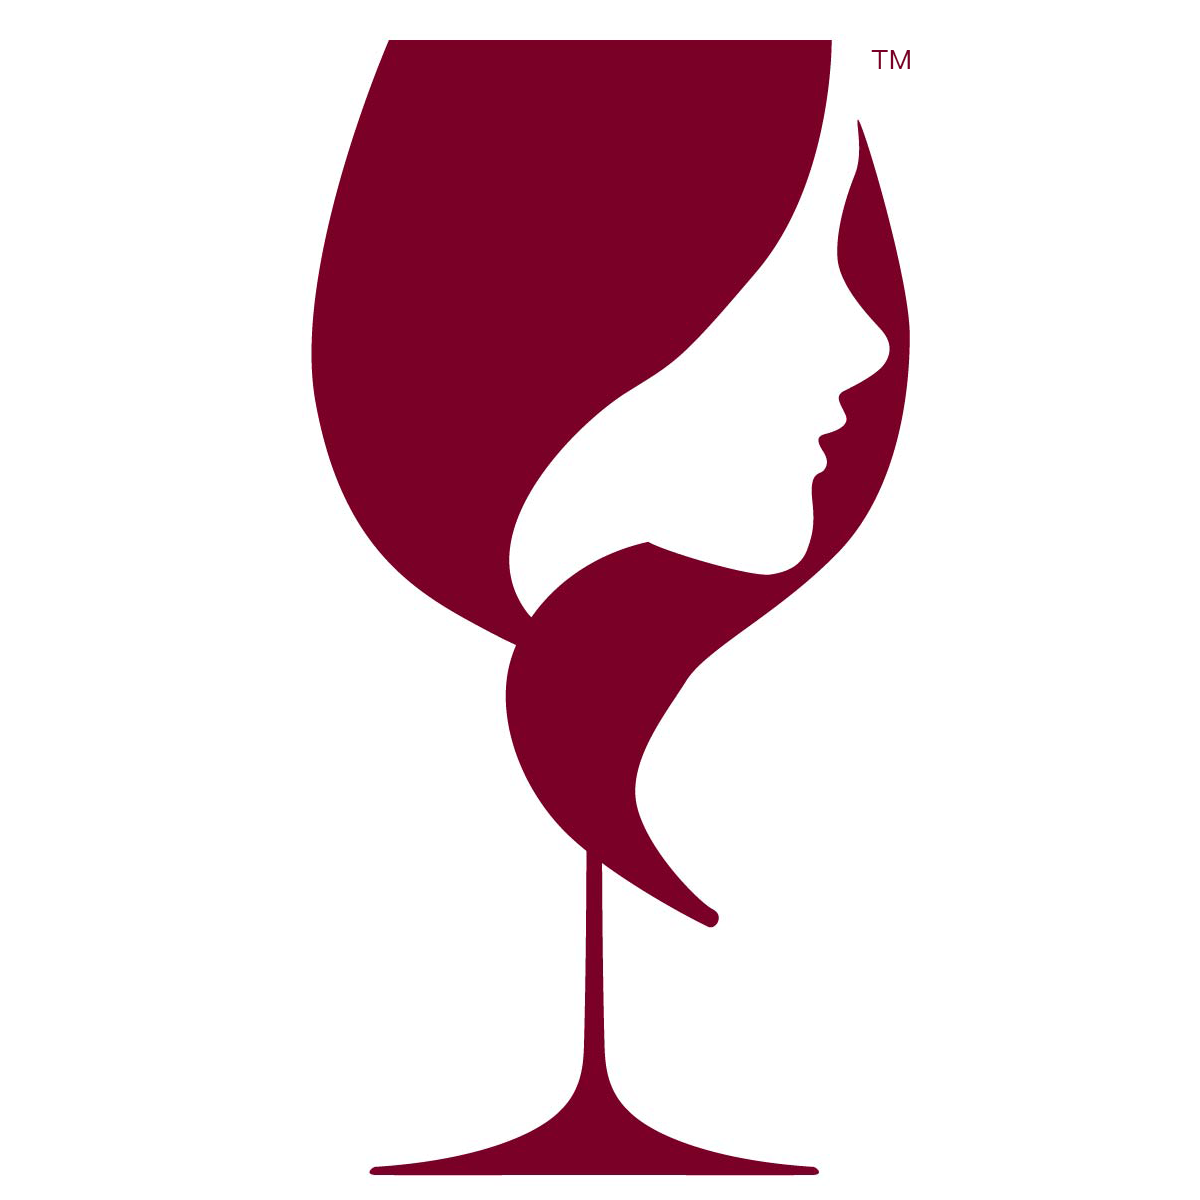 Adrice Wines' logo